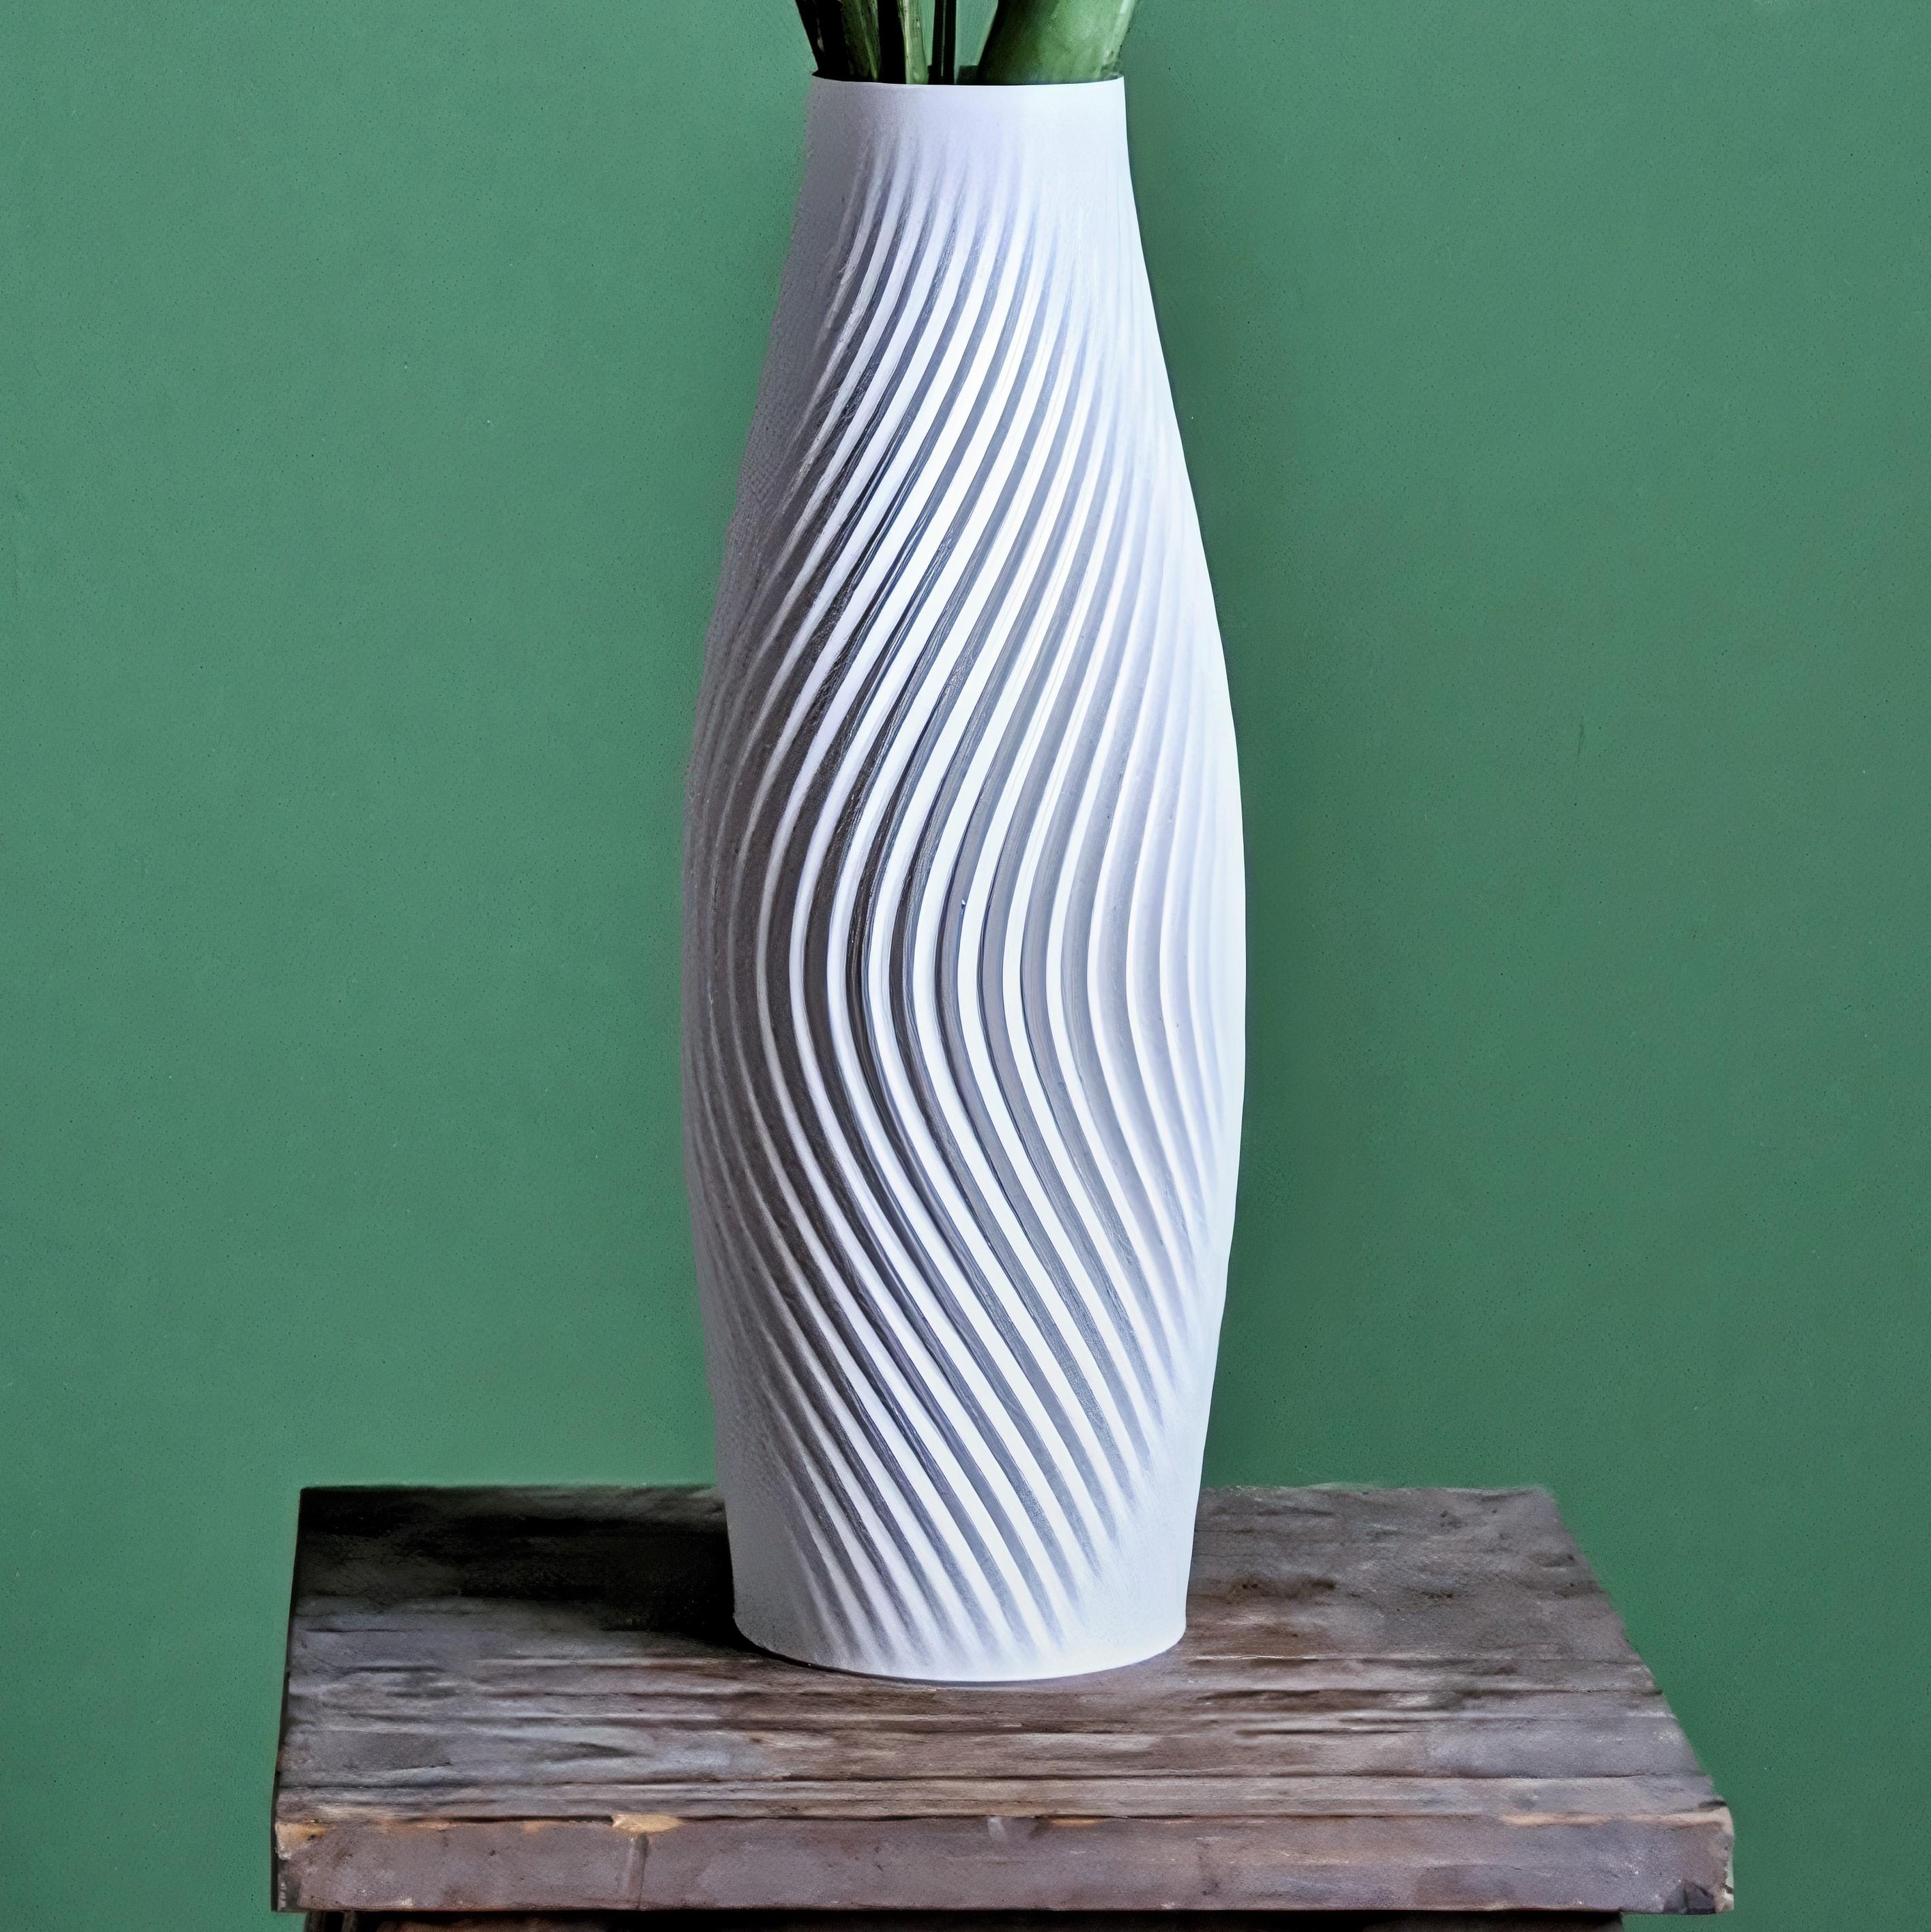 Modern Vase Design "Volute" minimalistic spiral design | STL to 3D print 3d model